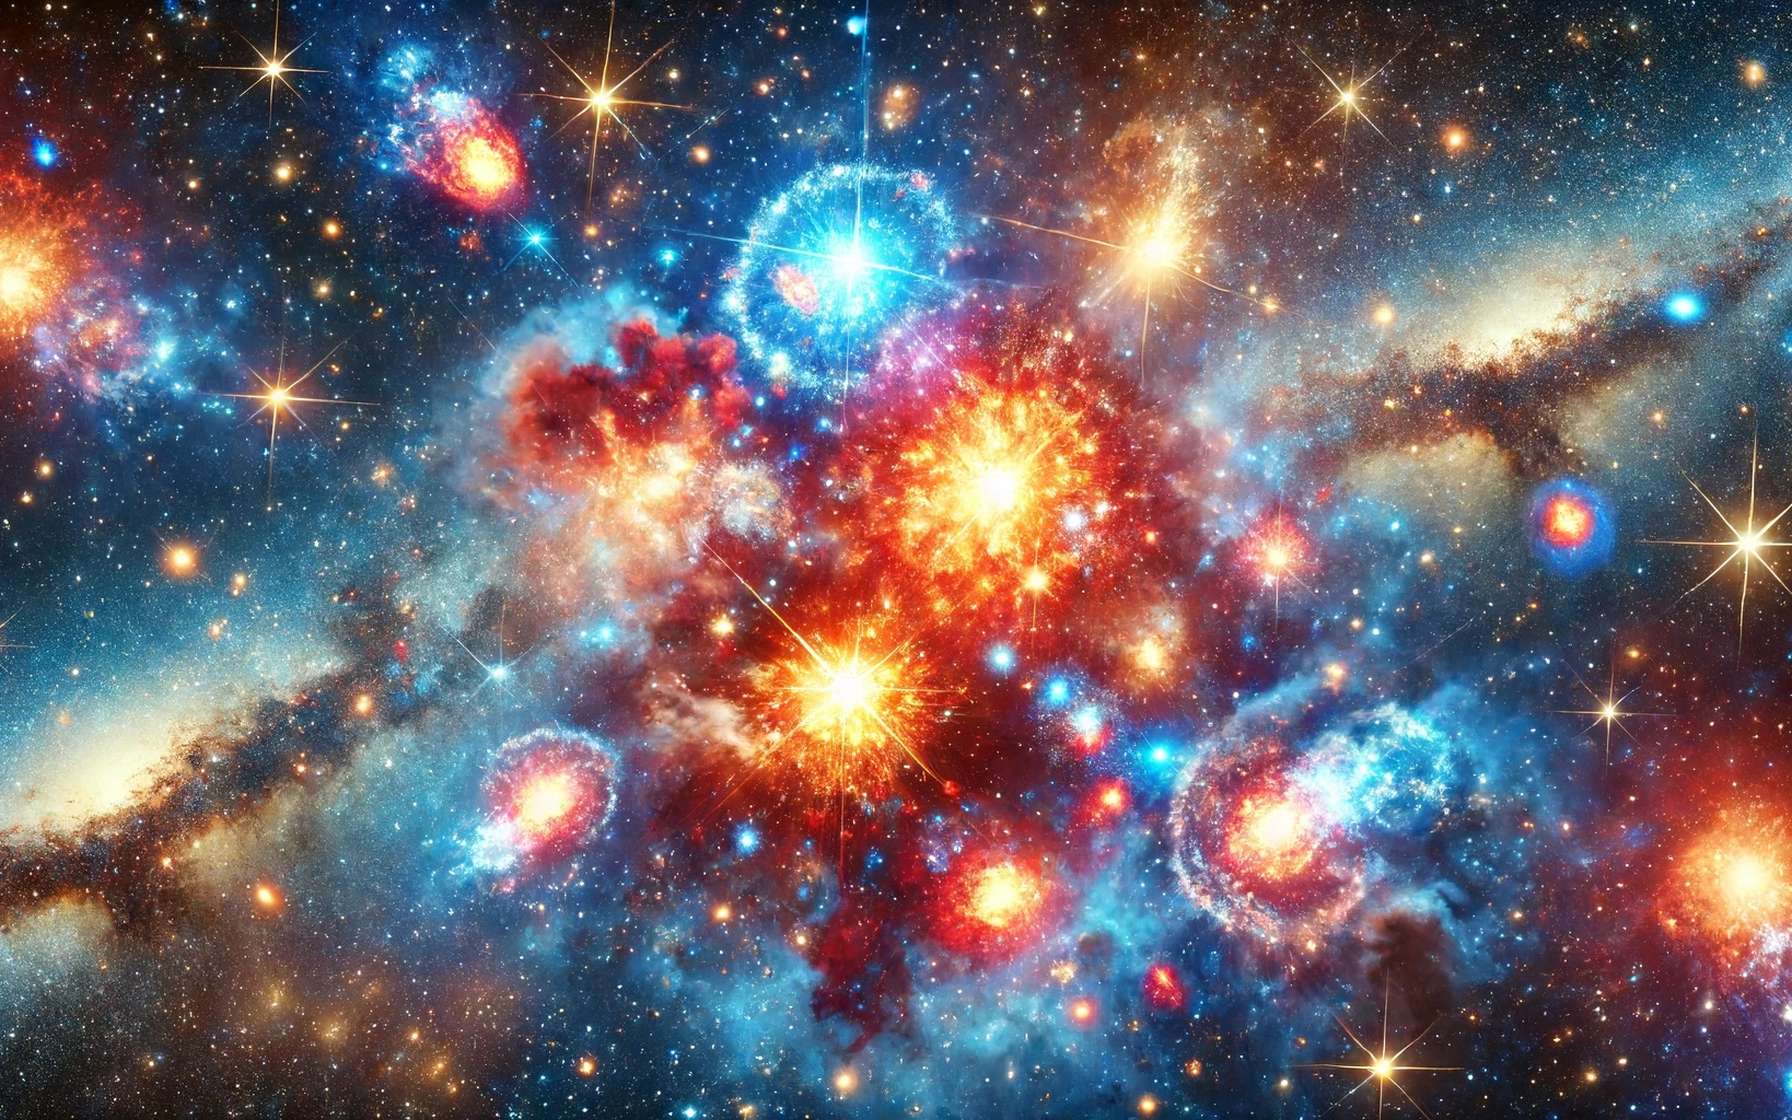 Le télescope James-Webb observe 10 fois plus de supernovae que prévu dans « l'adolescence » de l'Univers